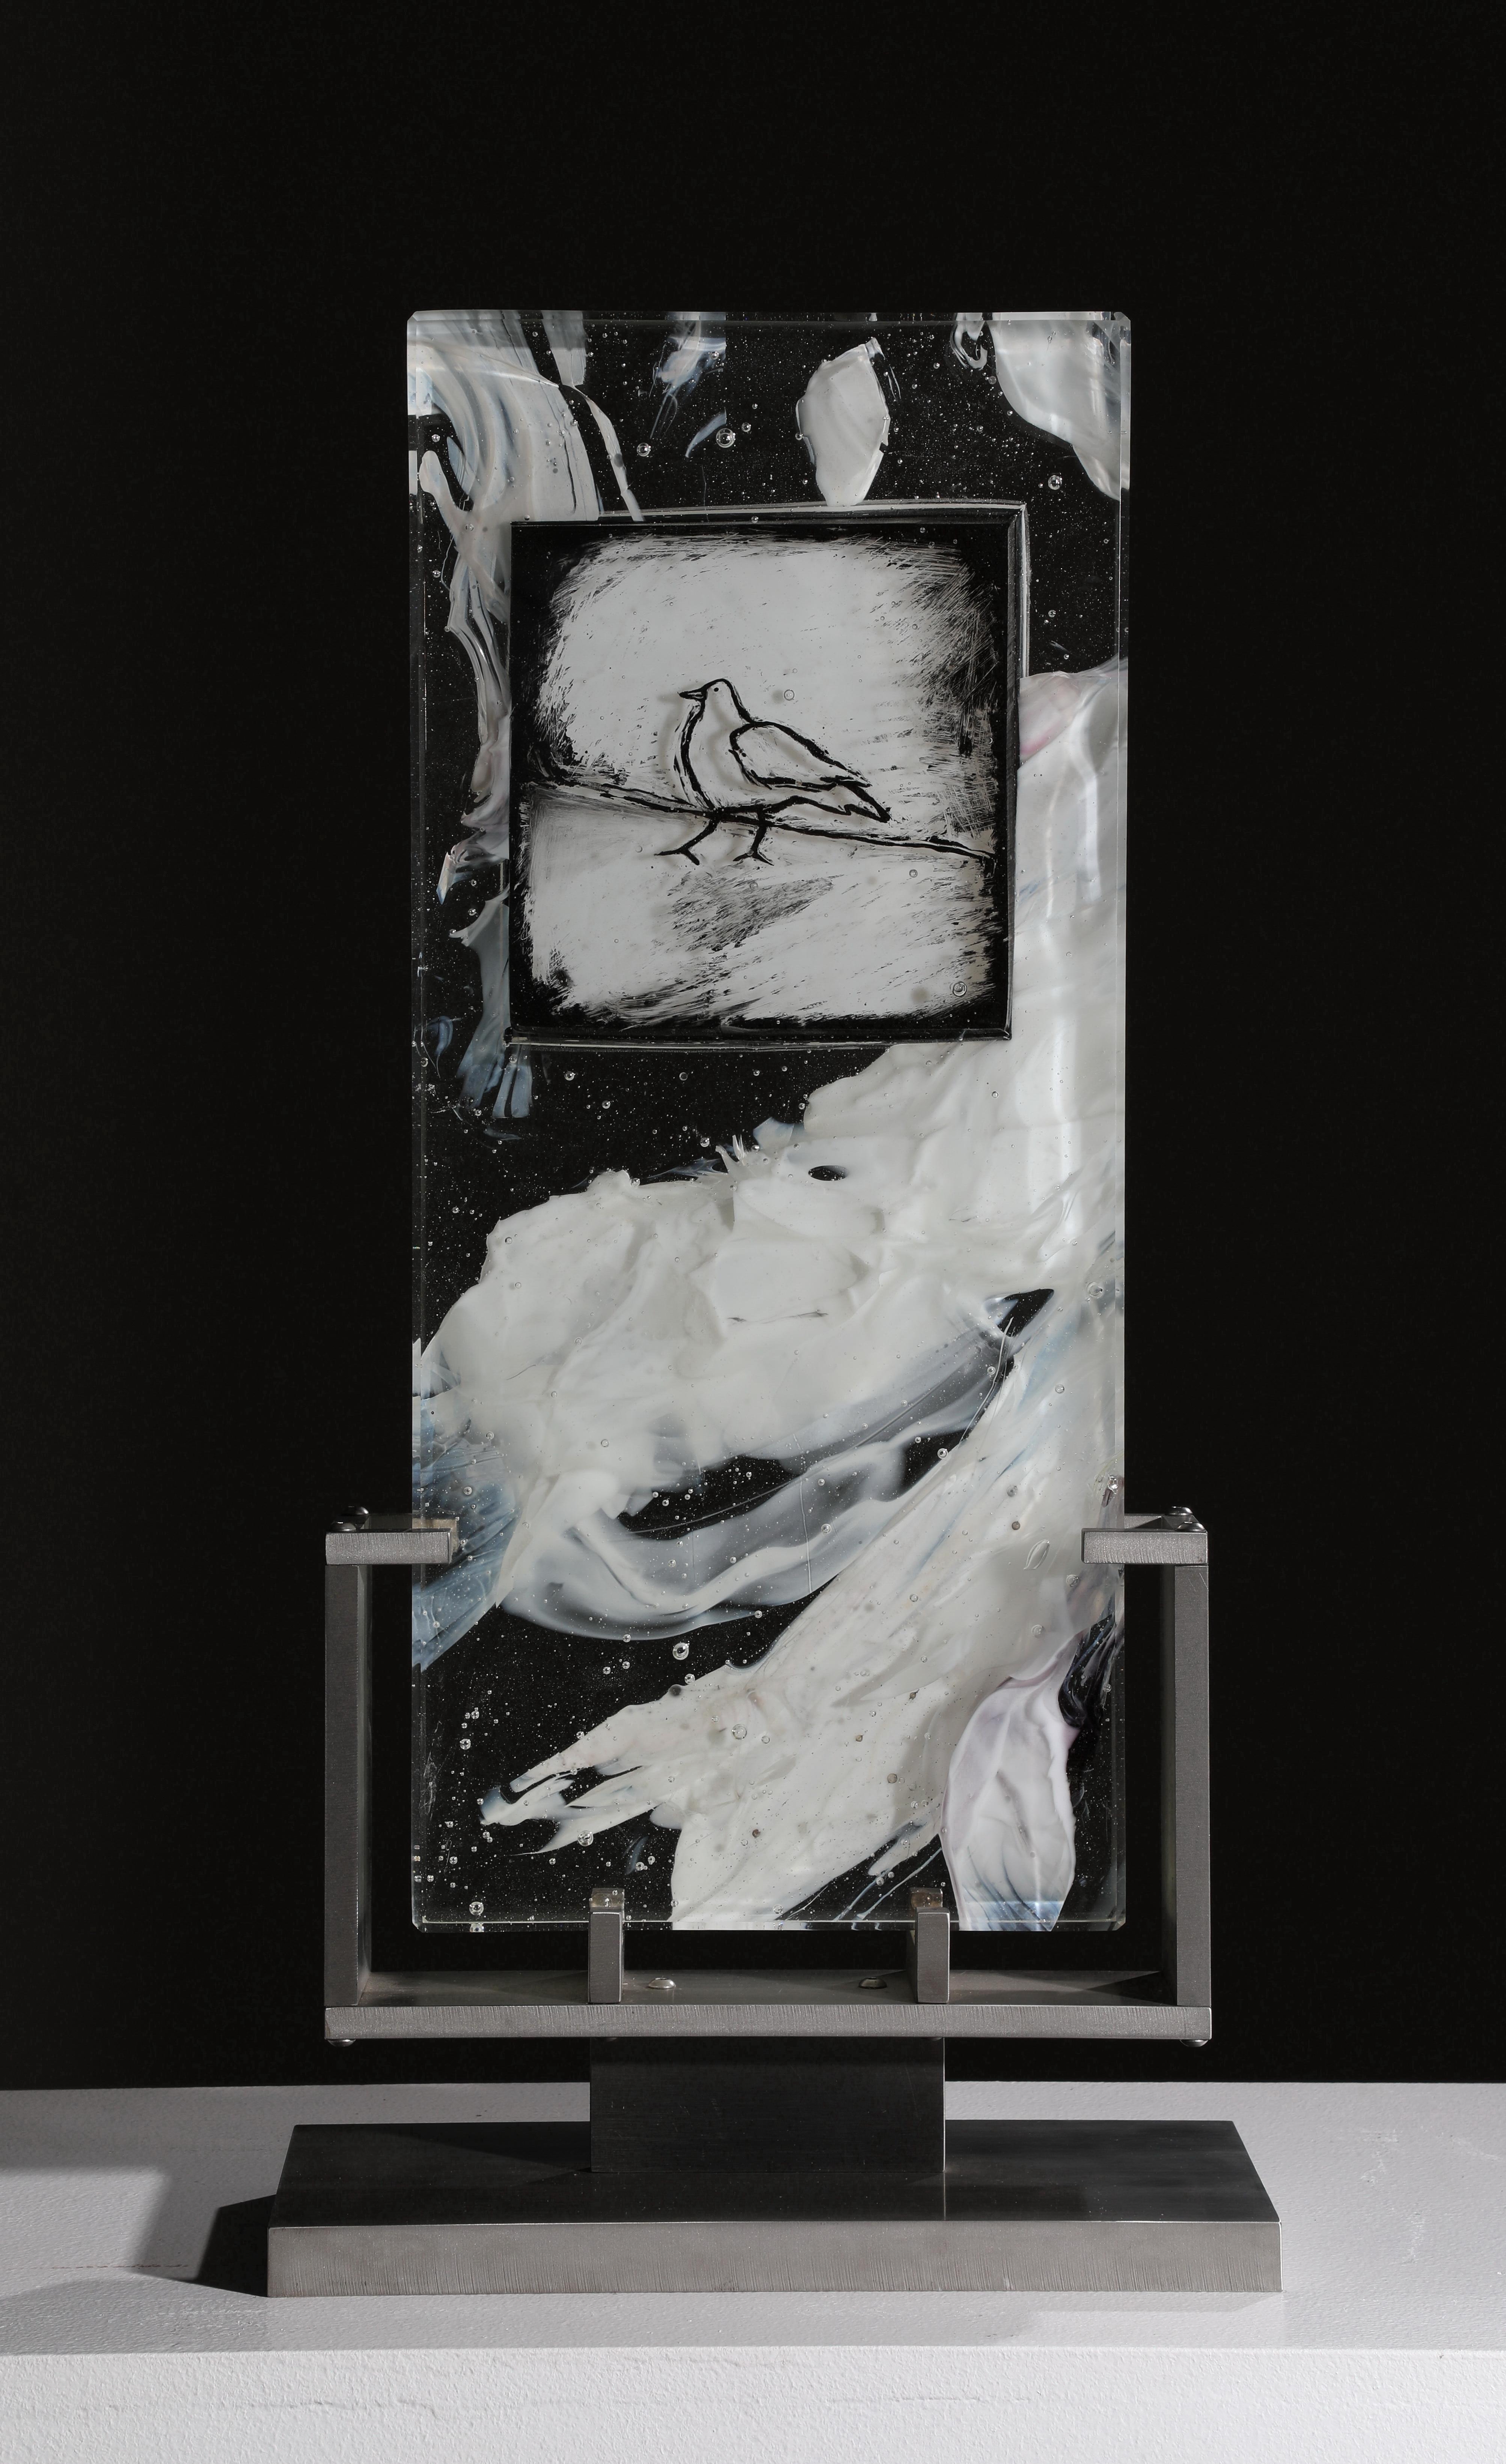 "Cloud Study: Bird" ist eine zeitgenössische abstrakte Glasskulptur von David Ruth aus seiner Cloud Study Serie. Es enthält Schattierungen von weißen, malerischen Pinselstrichen in Glas, die als Spuren bezeichnet werden. Die Spuren entstehen durch